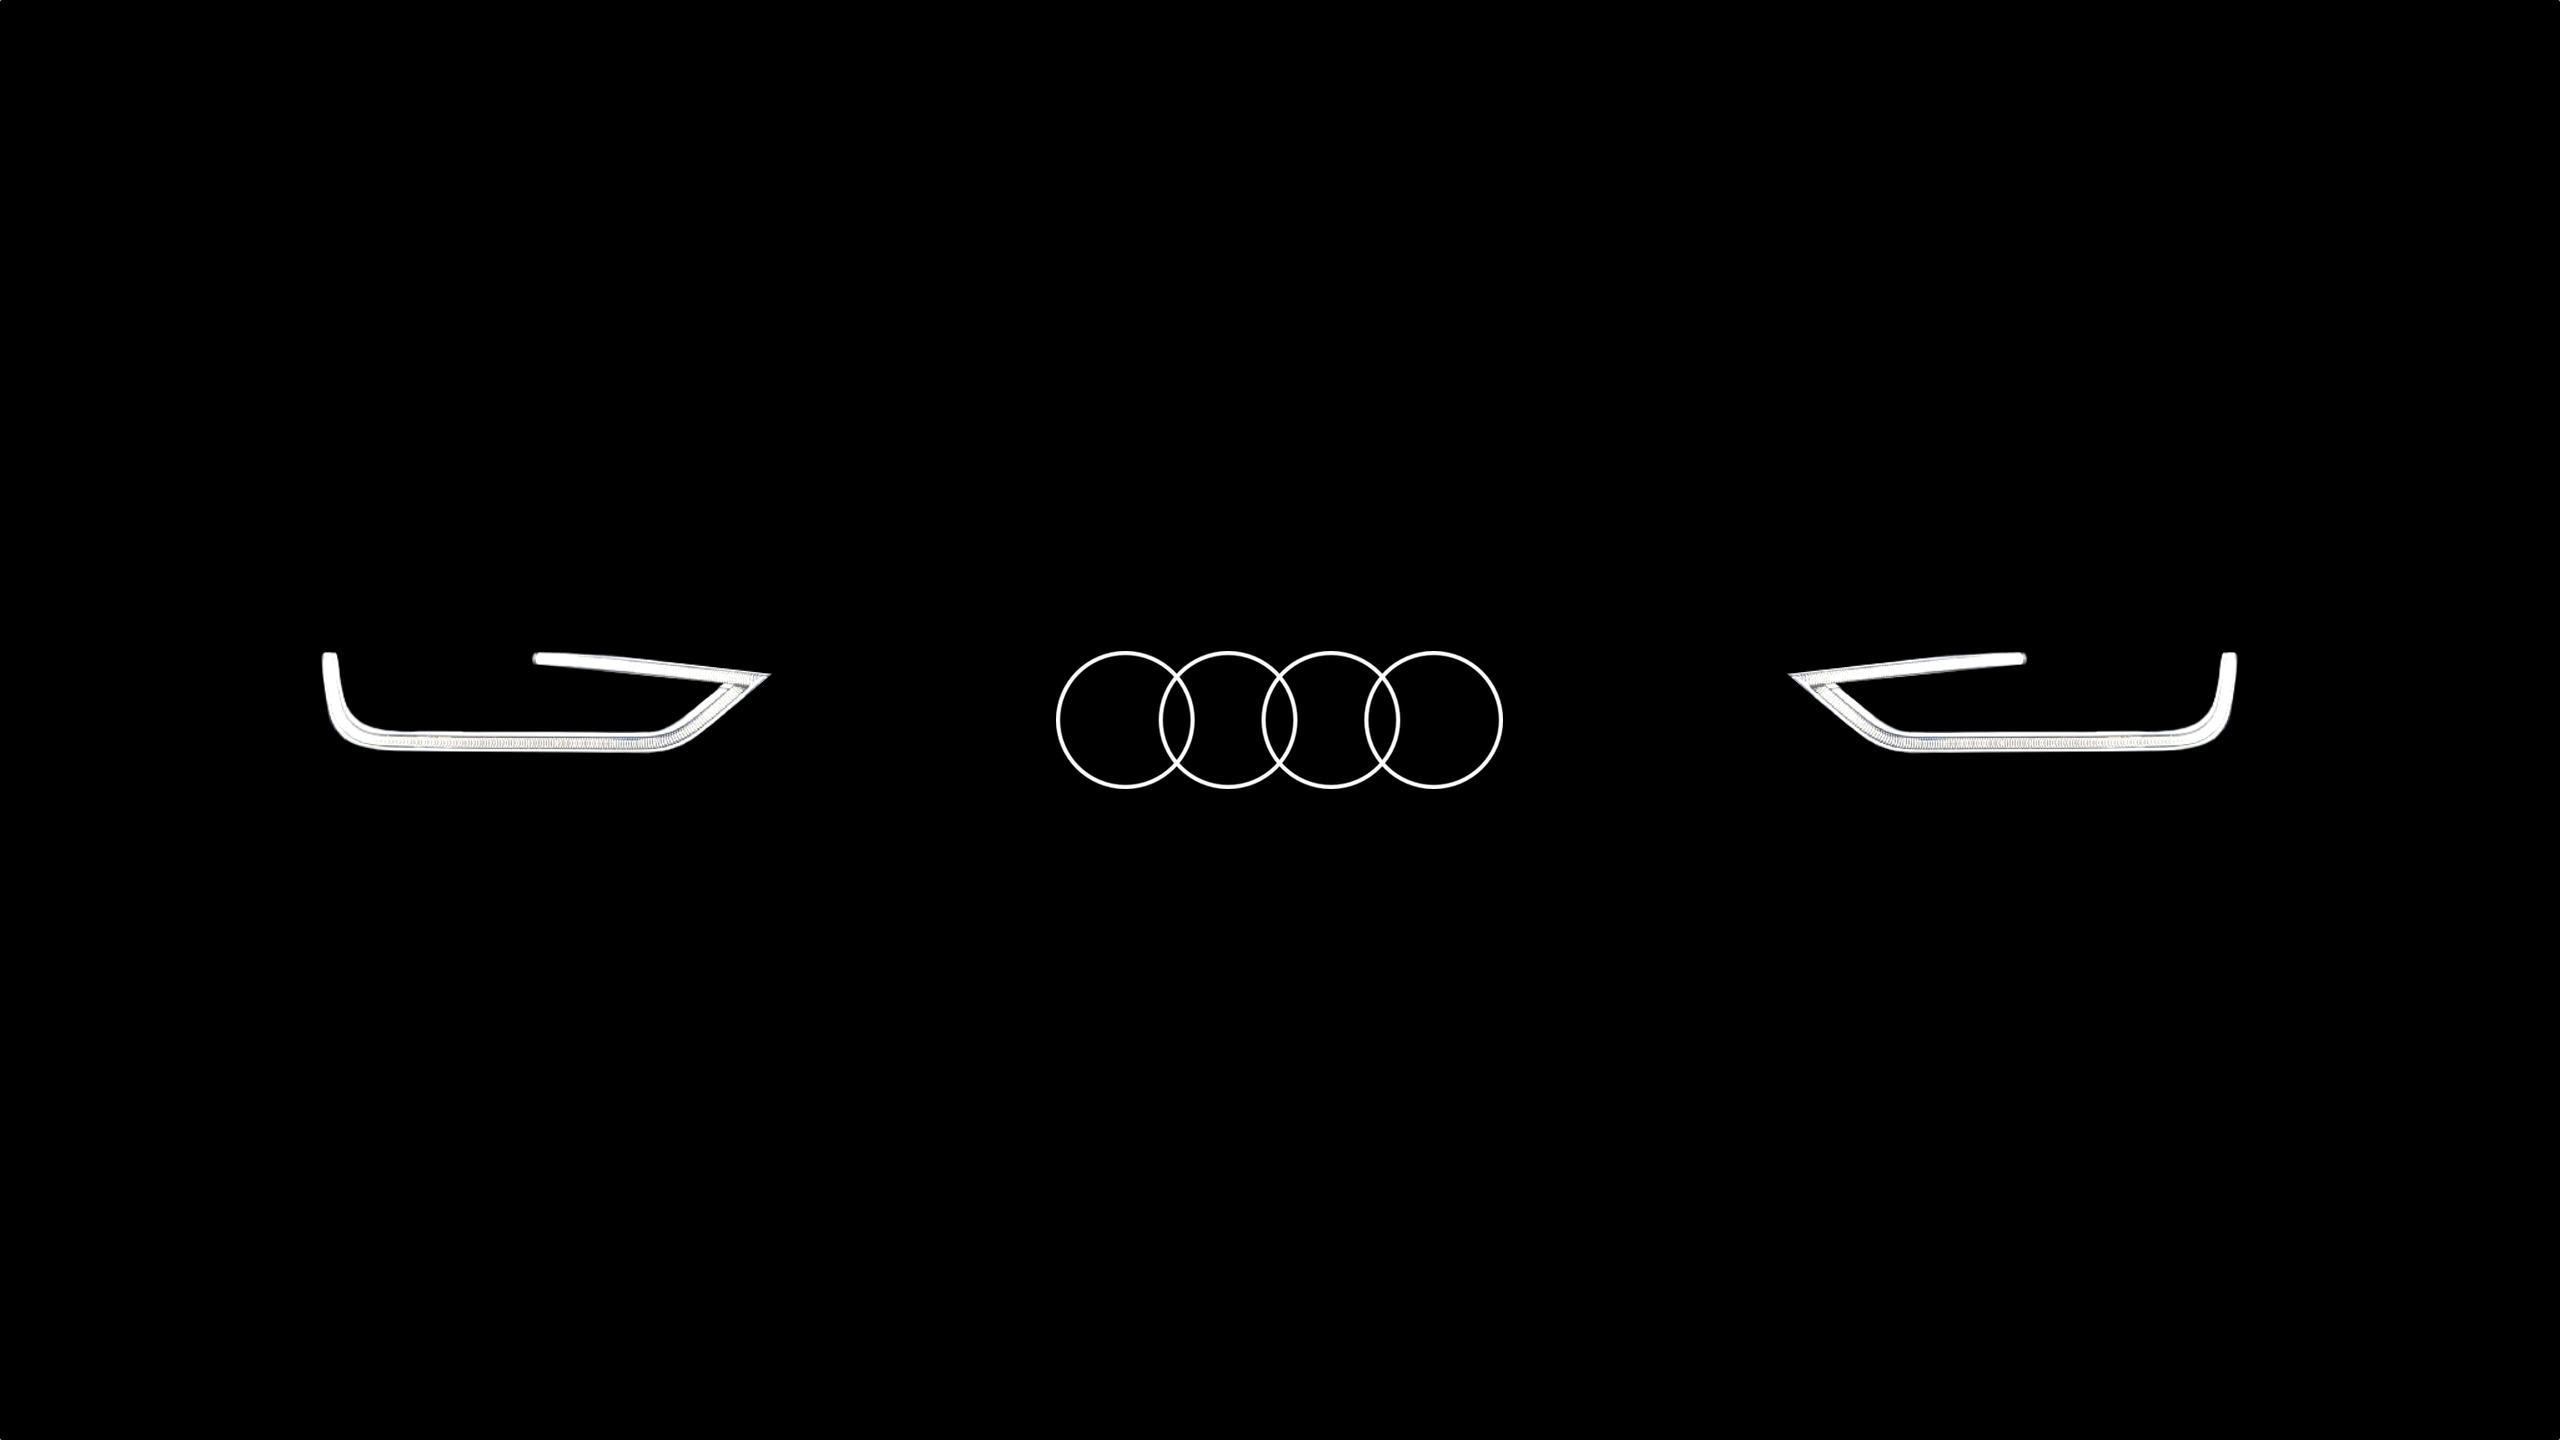 Audi Emblem Wallpaper Hd